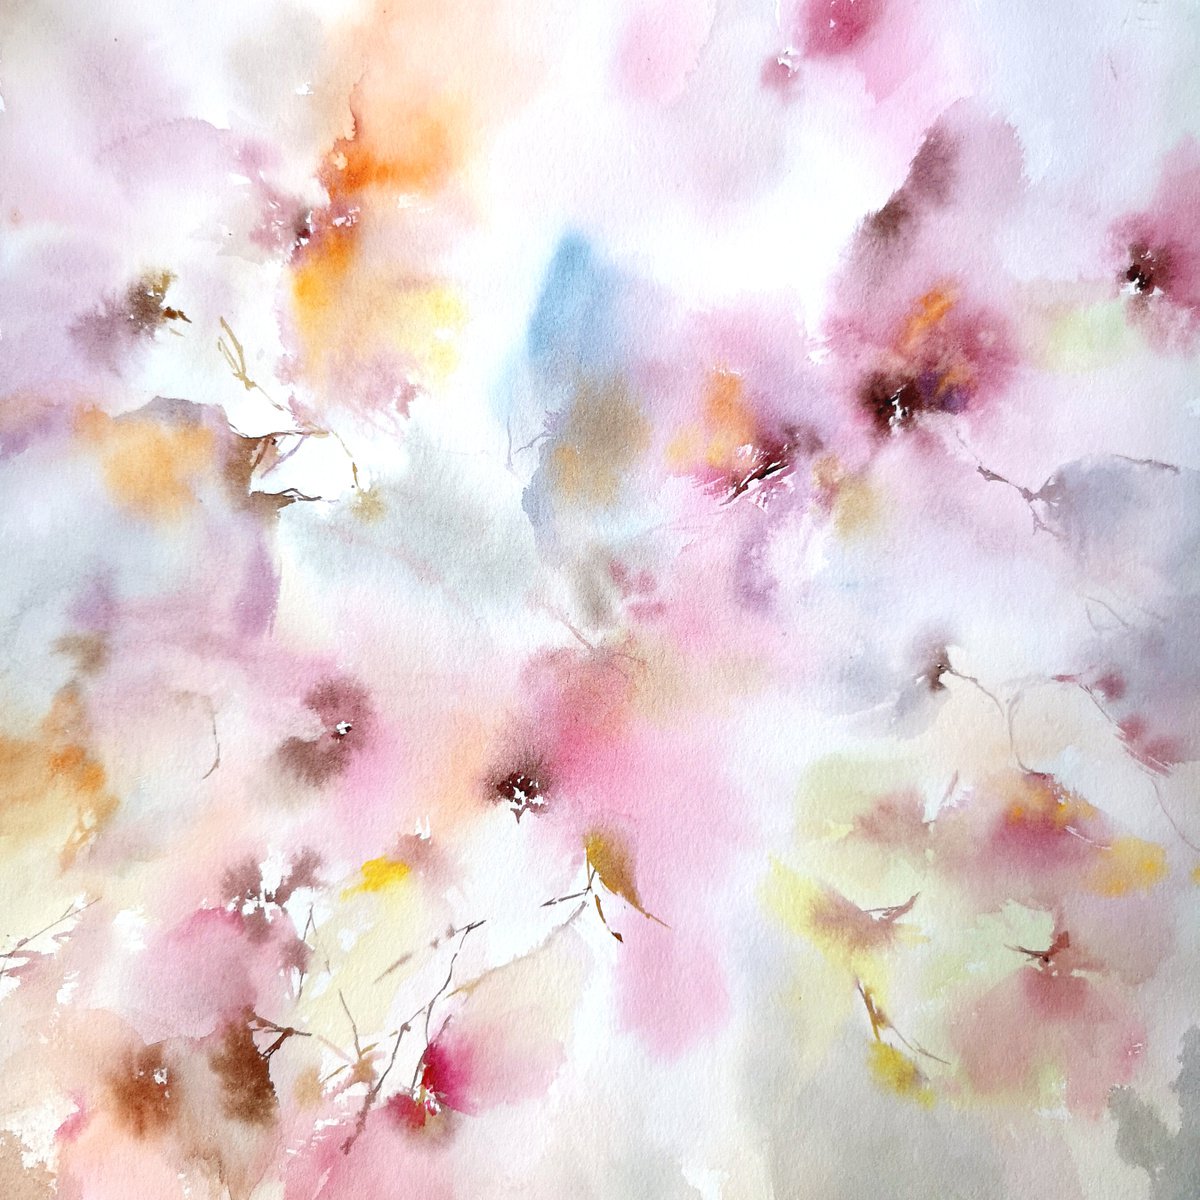 Gentle flower painting Sweet dreams by Olya Grigo